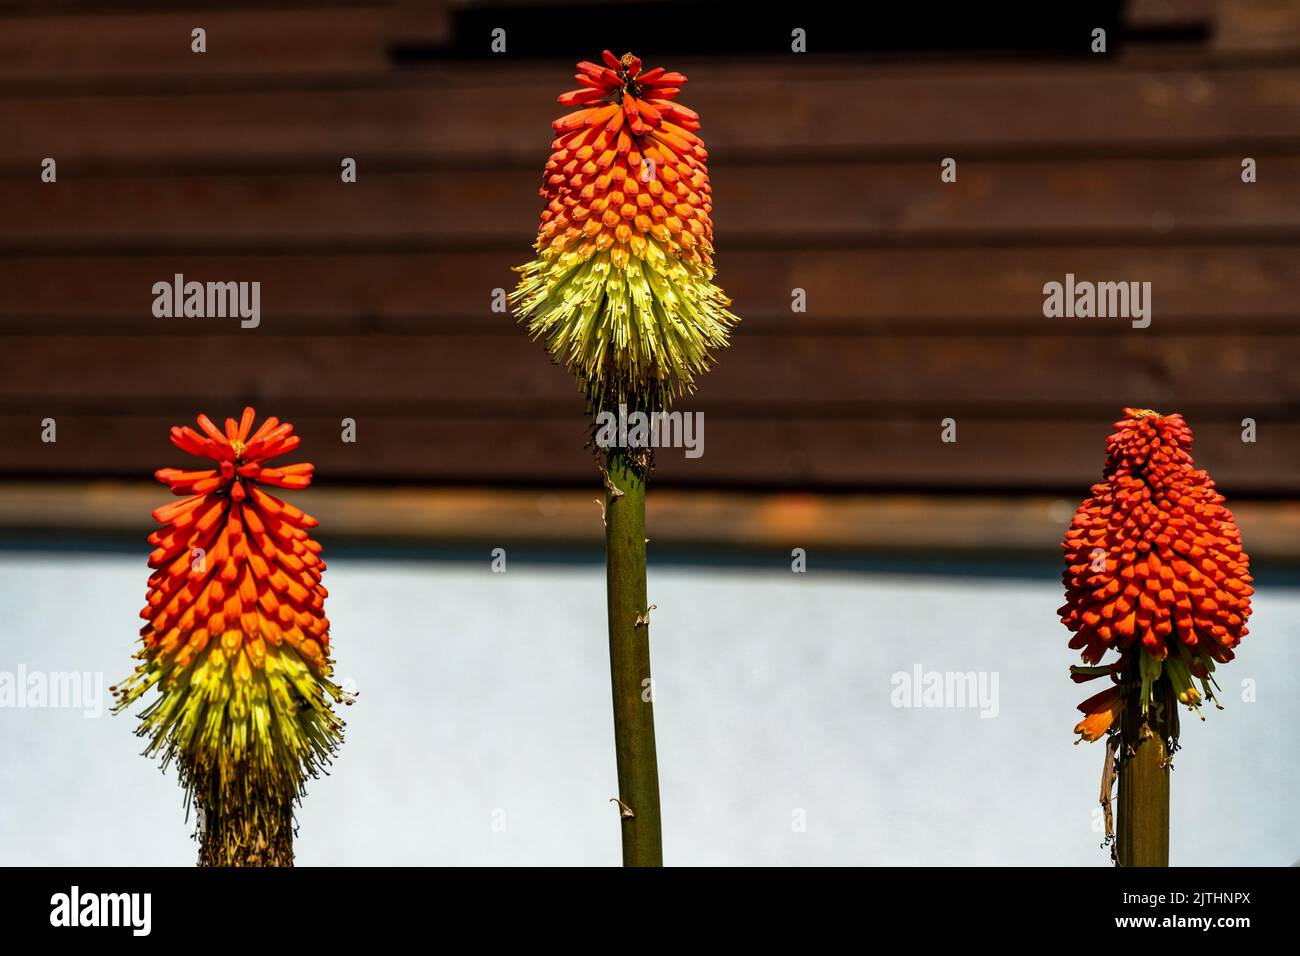 Couleur attrayante et vibrante de Kniphofia uvaria (Tritoma, Red Hot poker, appelé aussi) fleur sur fond de bois. Banque D'Images